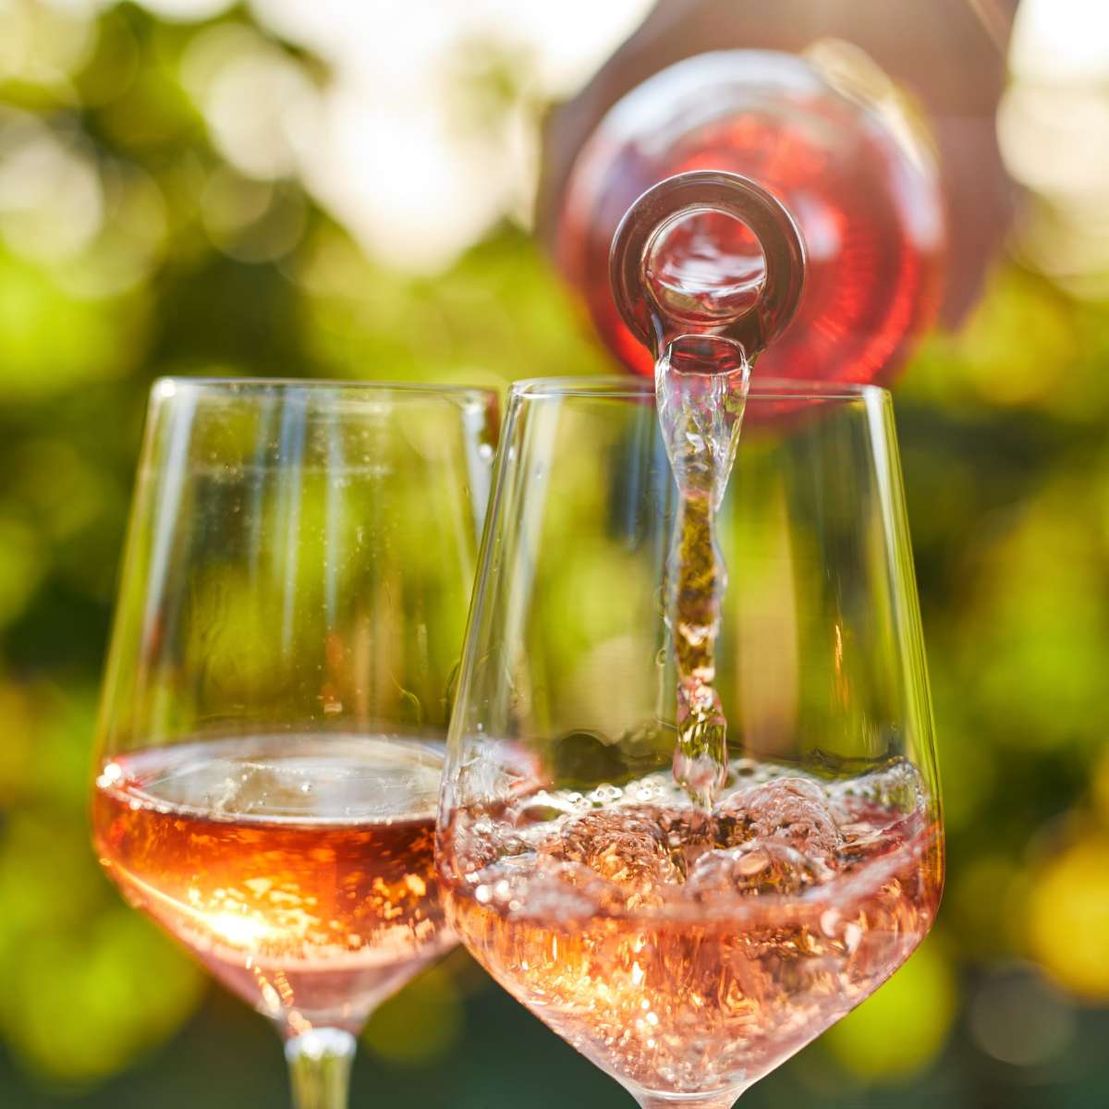 Fotografía de copas de vino rosado